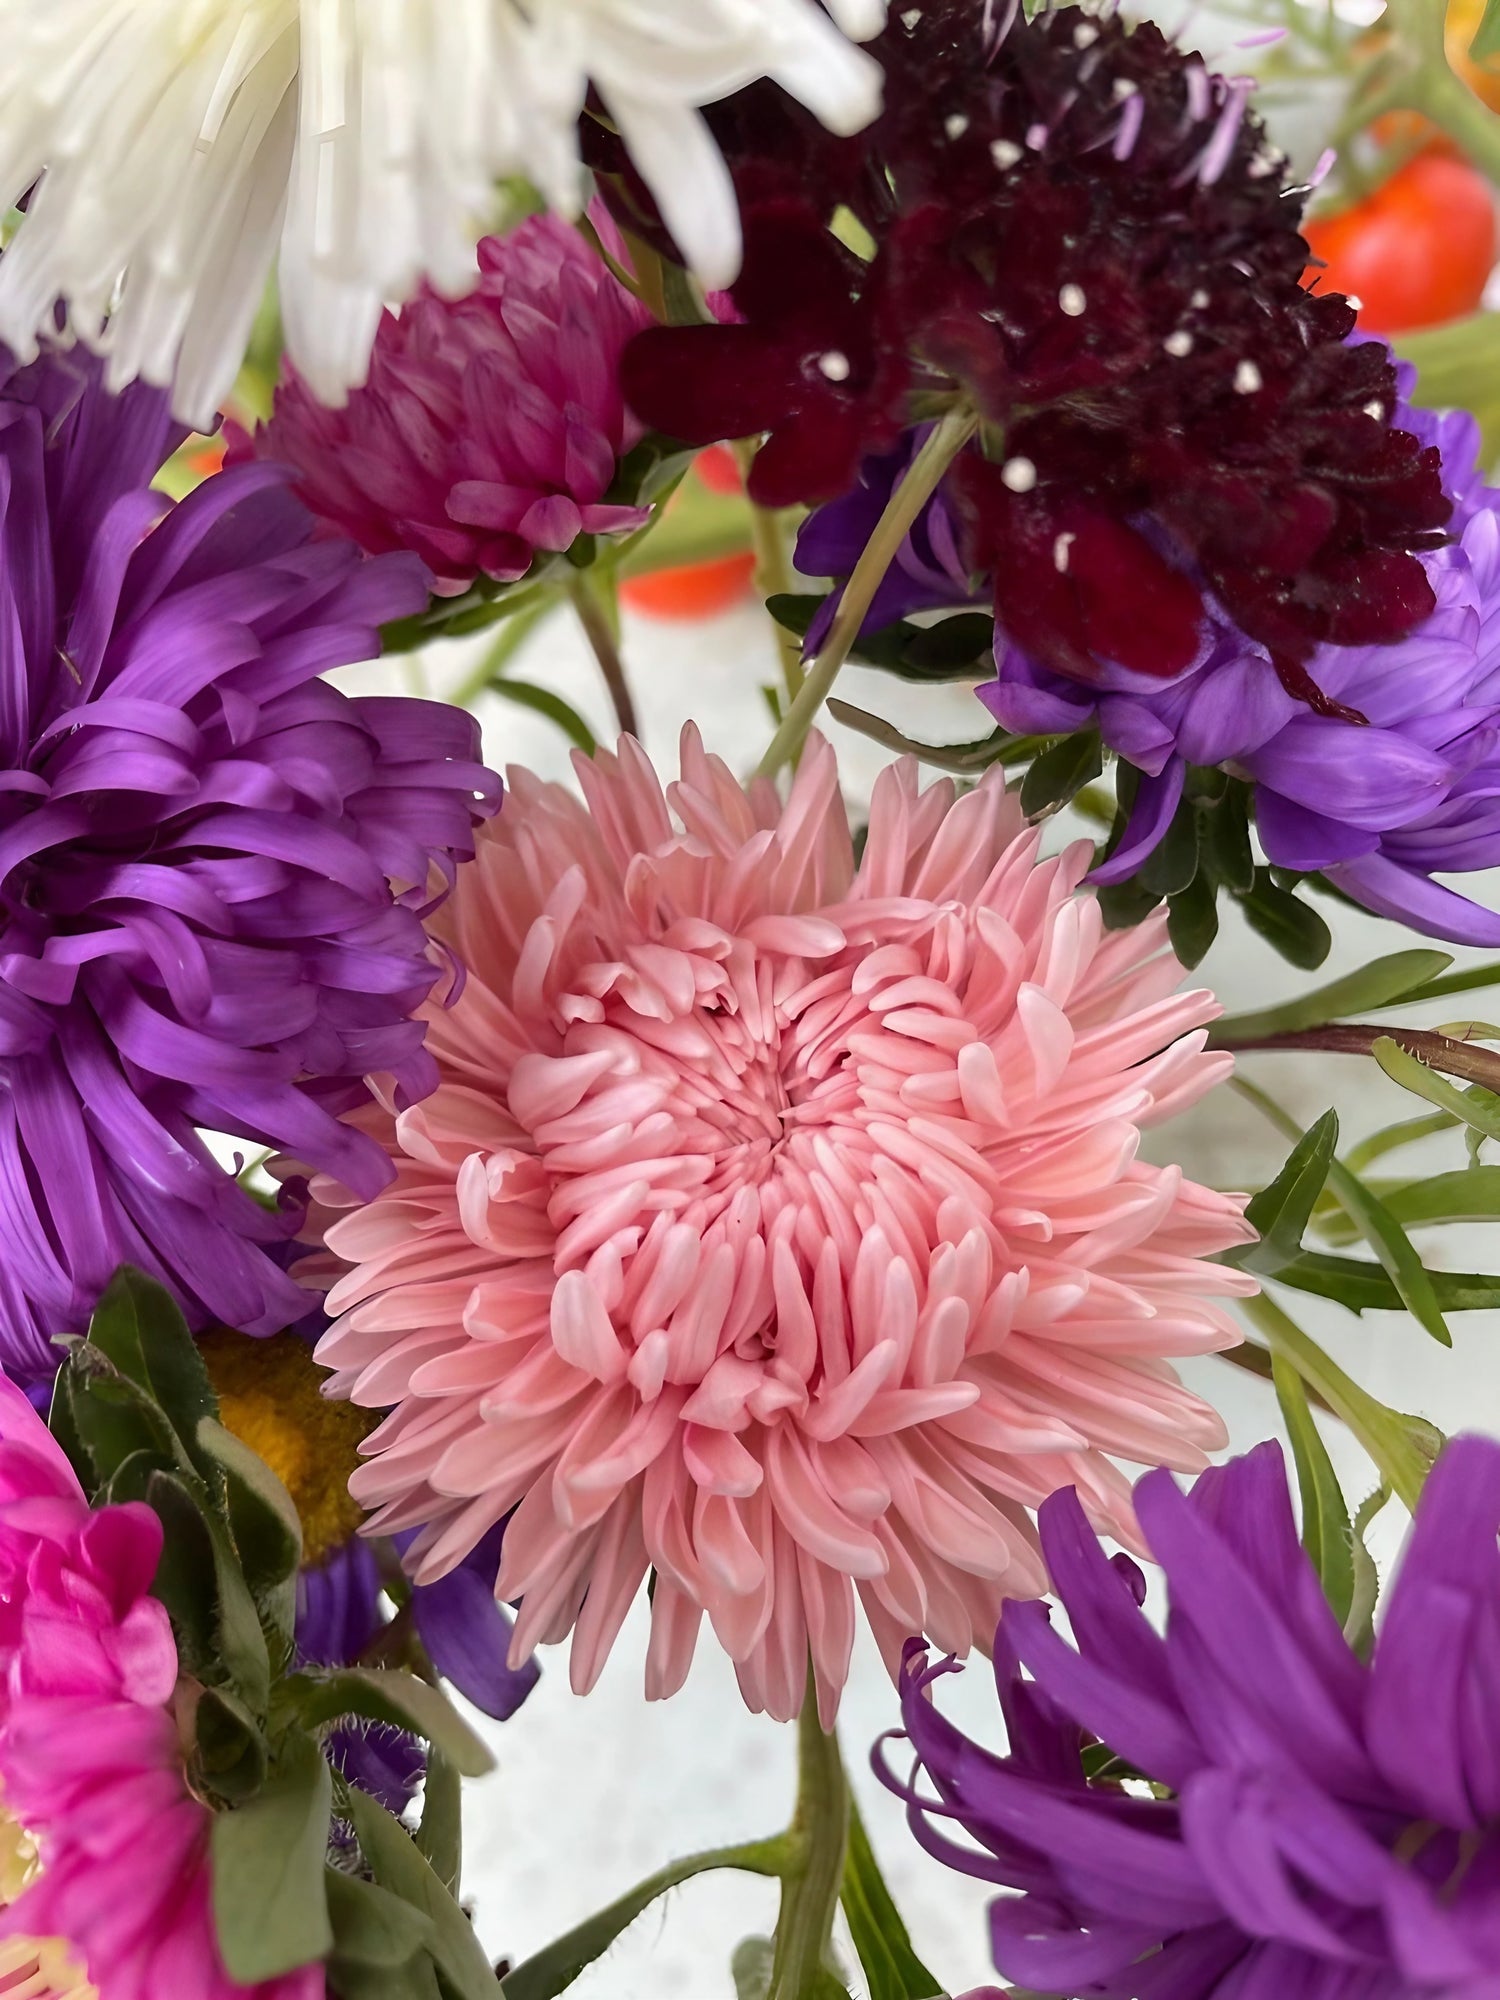 An arrangement of mixed Aster Duchess flowers in a vase